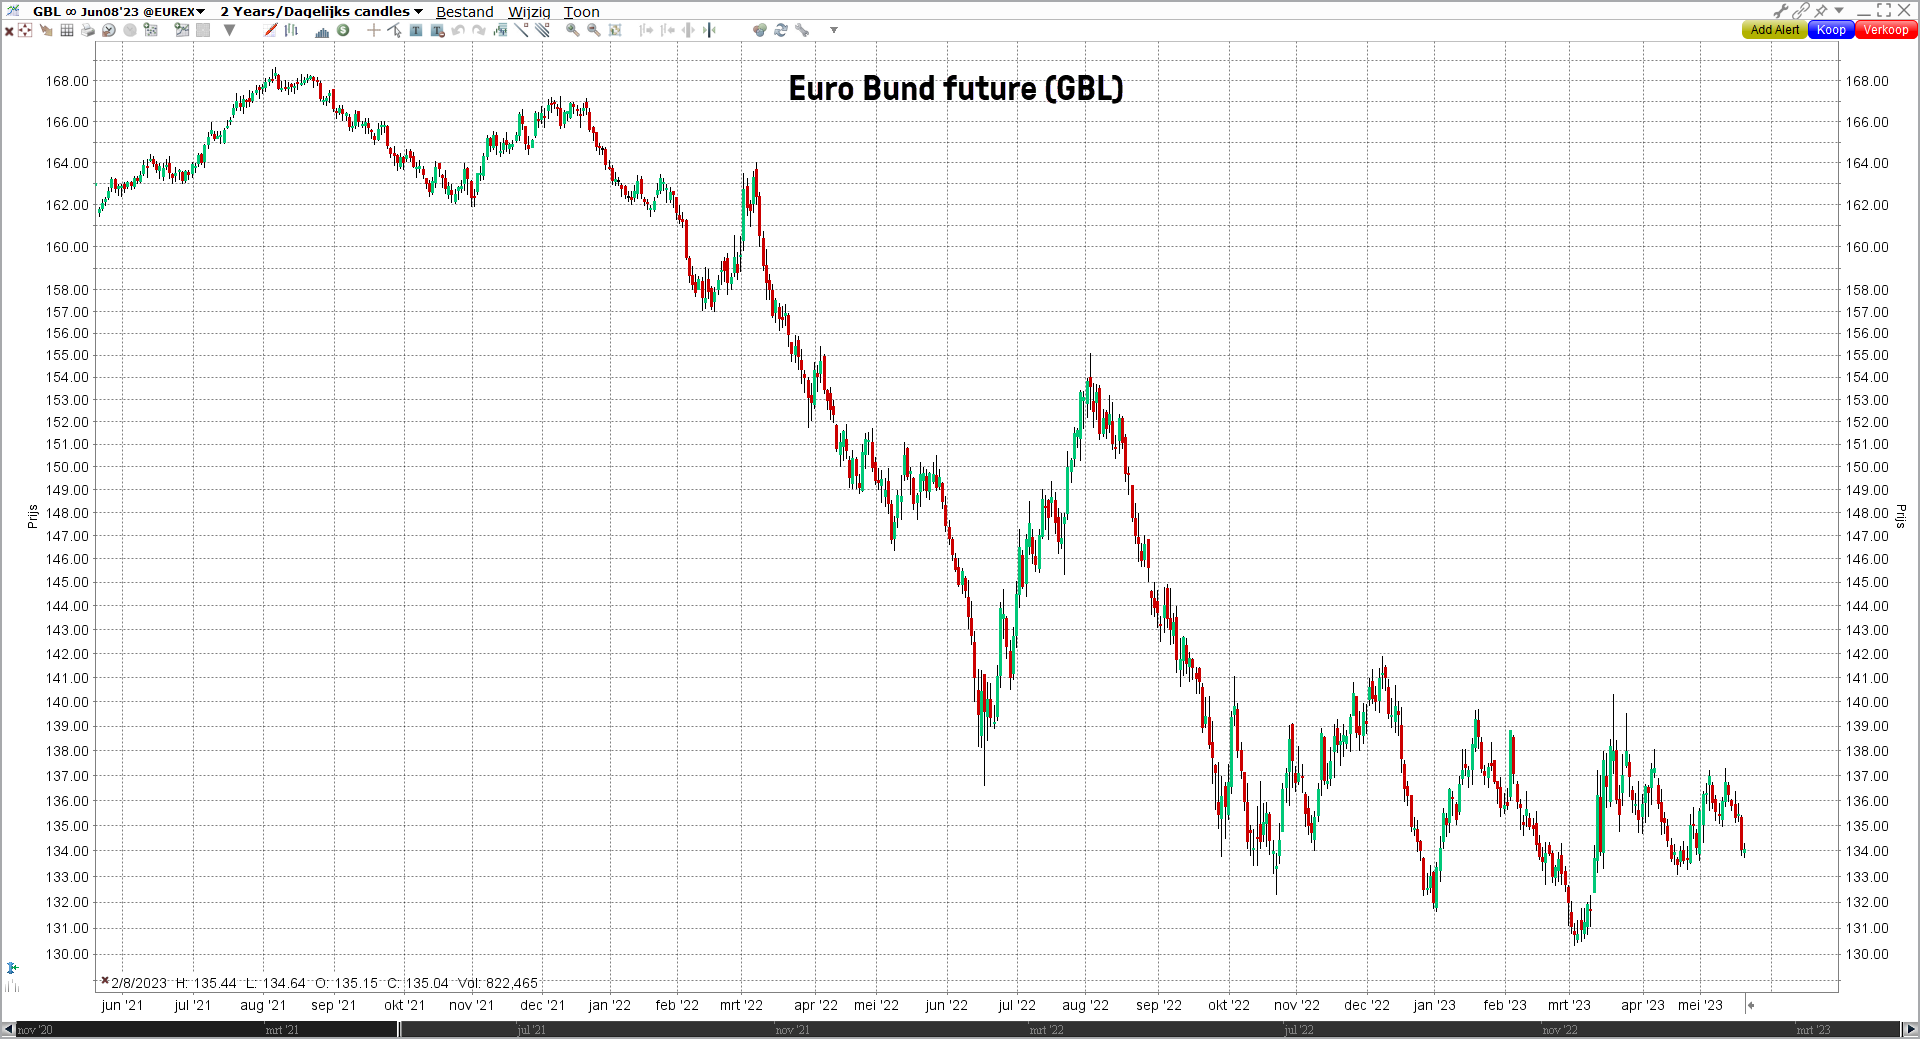 euro bund future wiki - grafiek euro bund future - gbl future